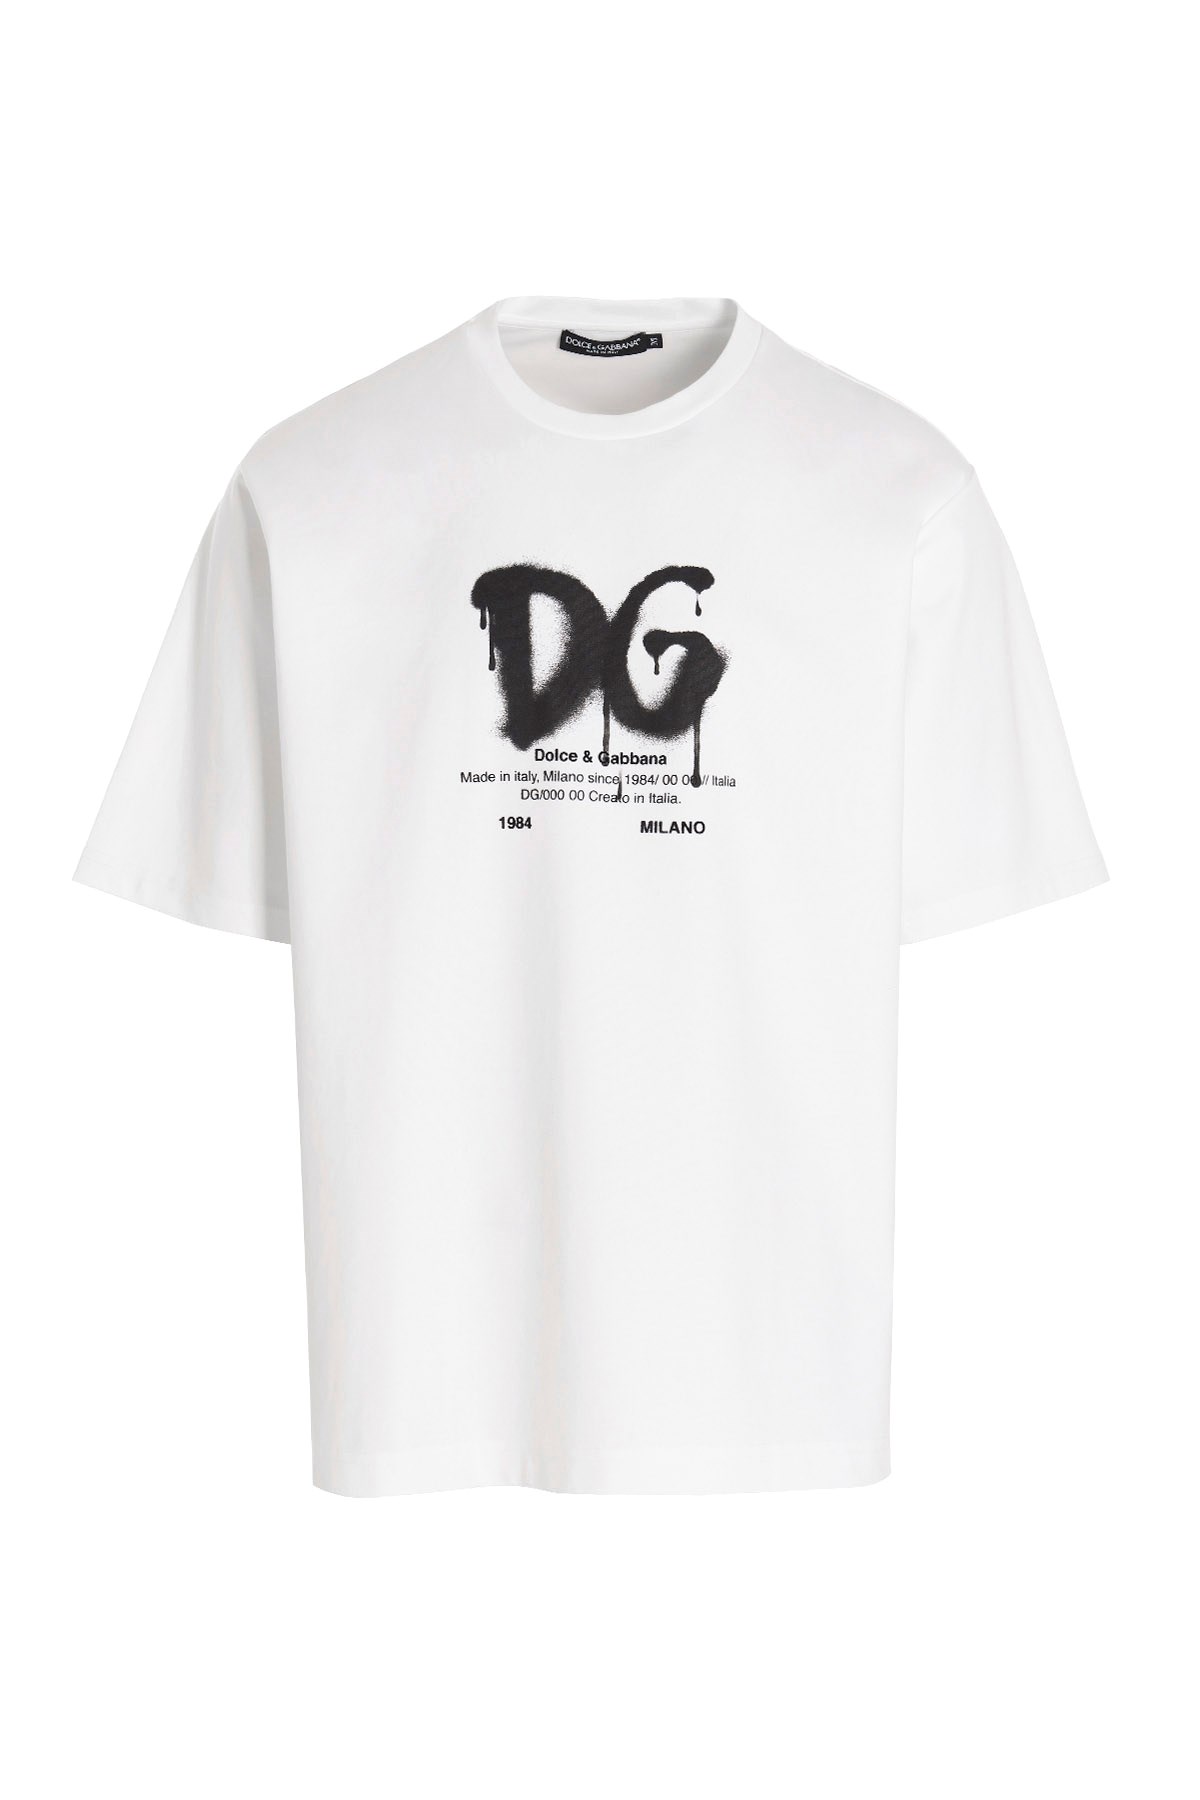 DOLCE & GABBANA ‘Dna’ T-Shirt